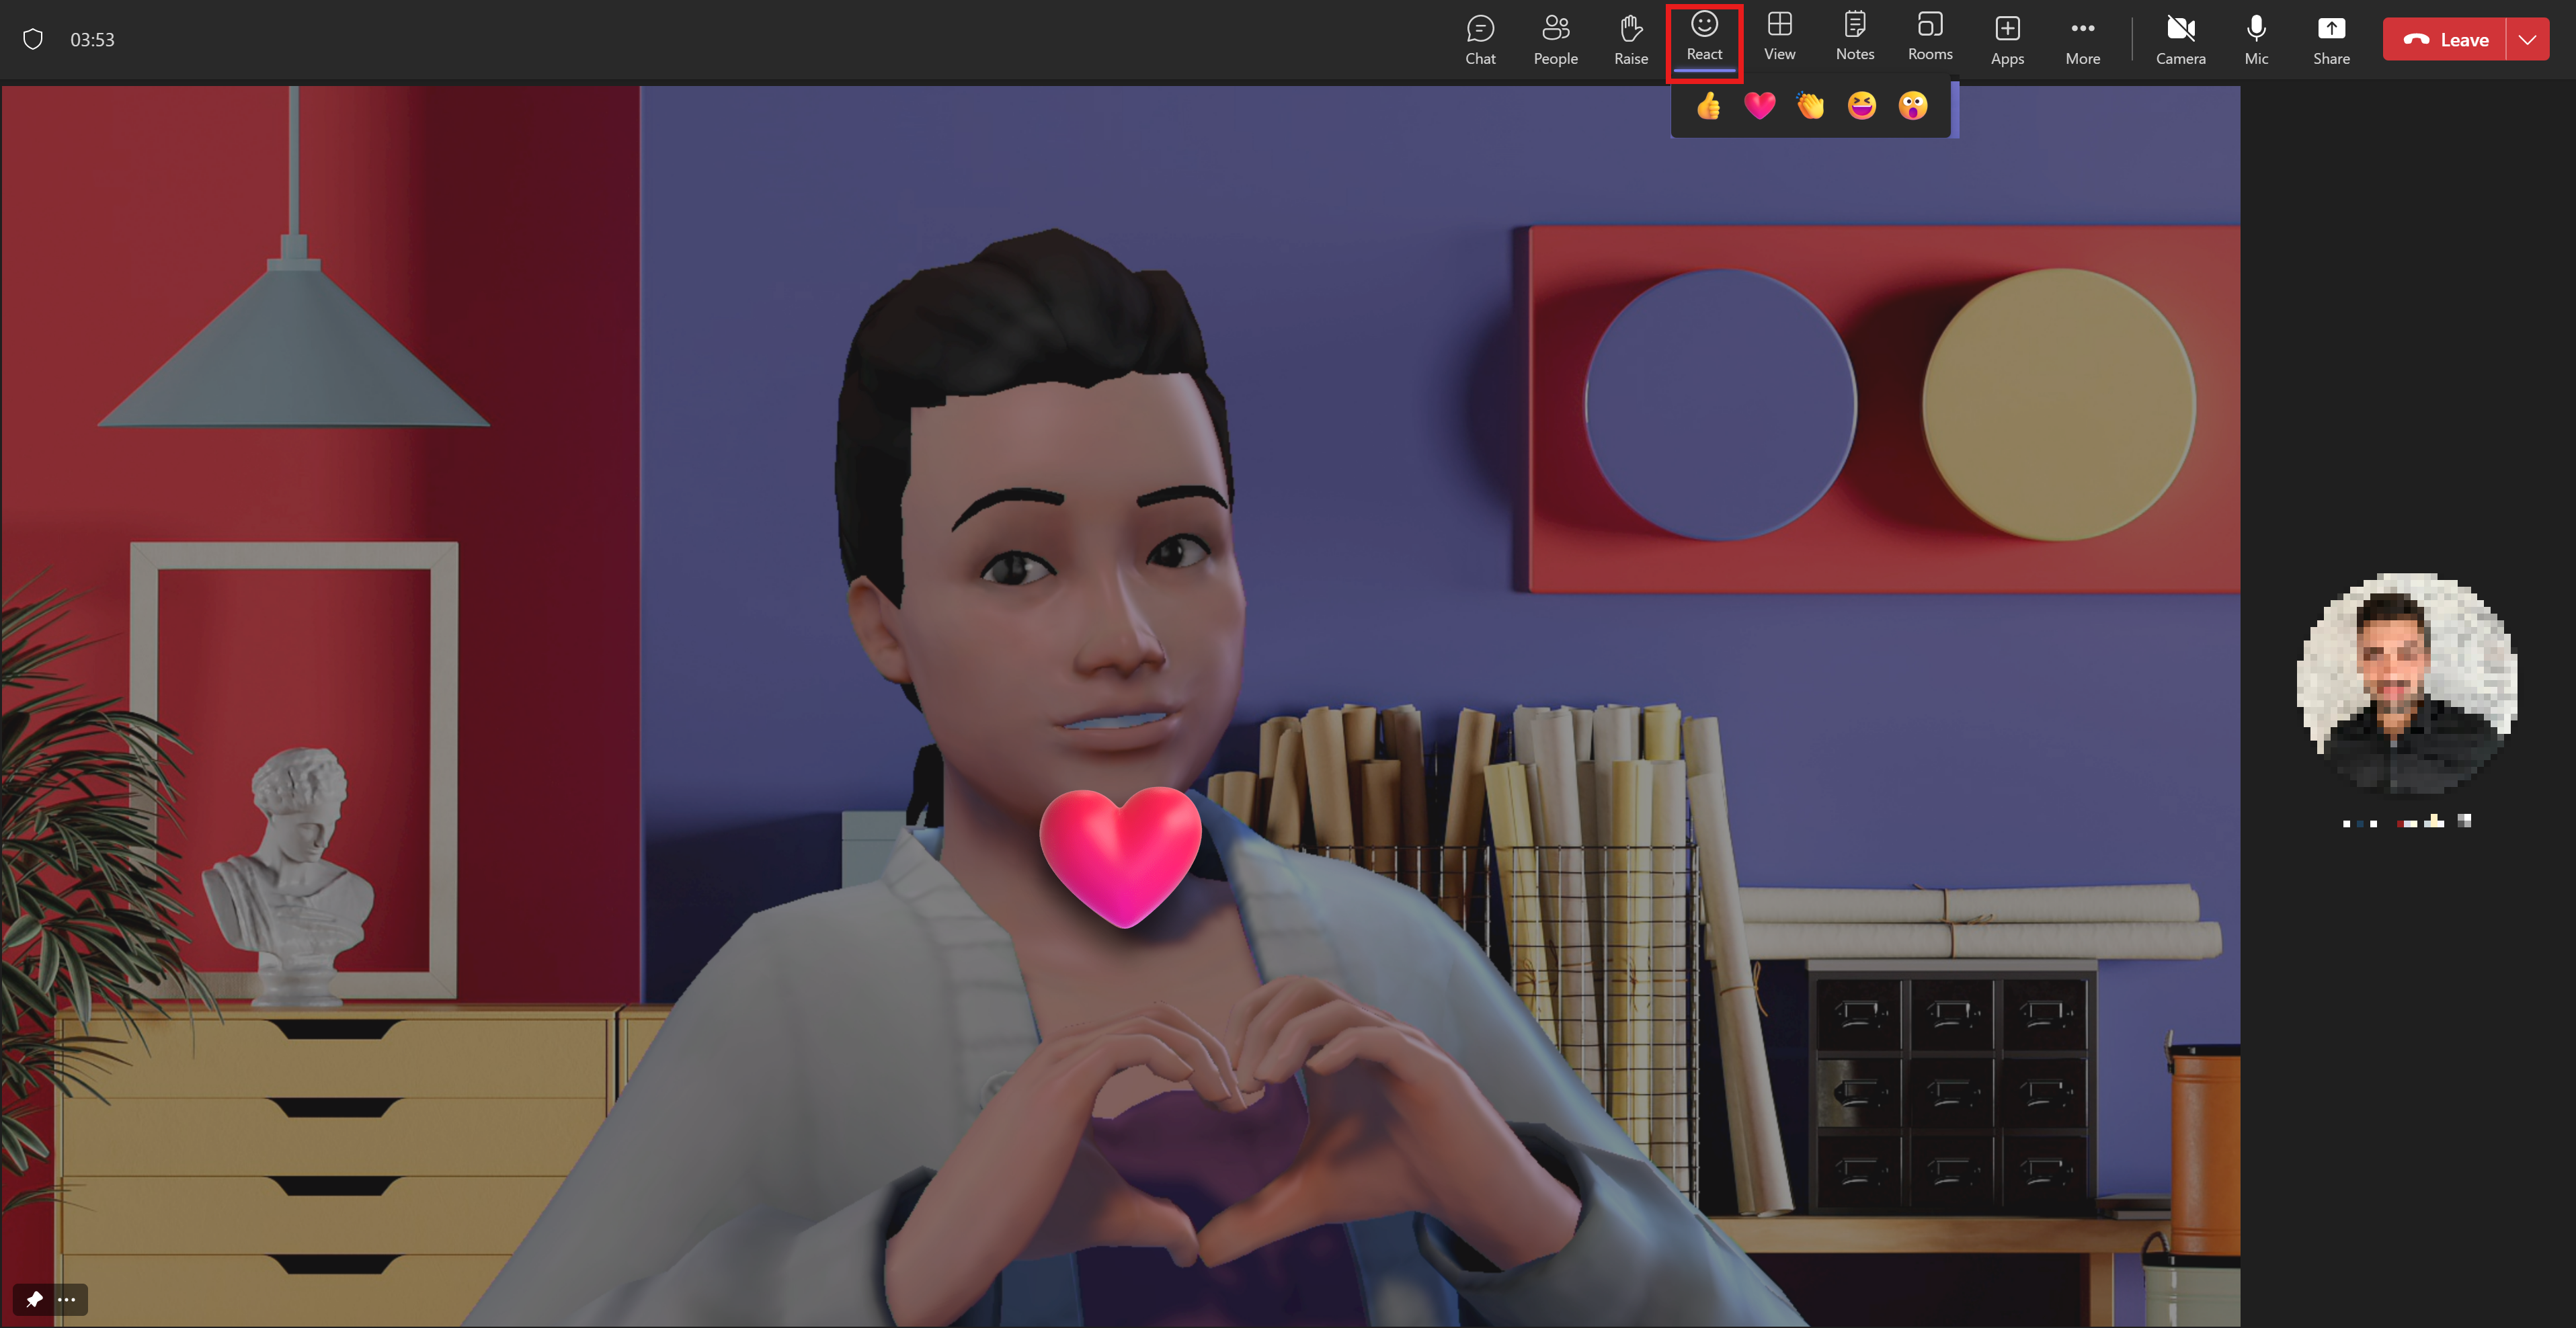 Un avatar montre son amour en faisant un cœur avec ses mains